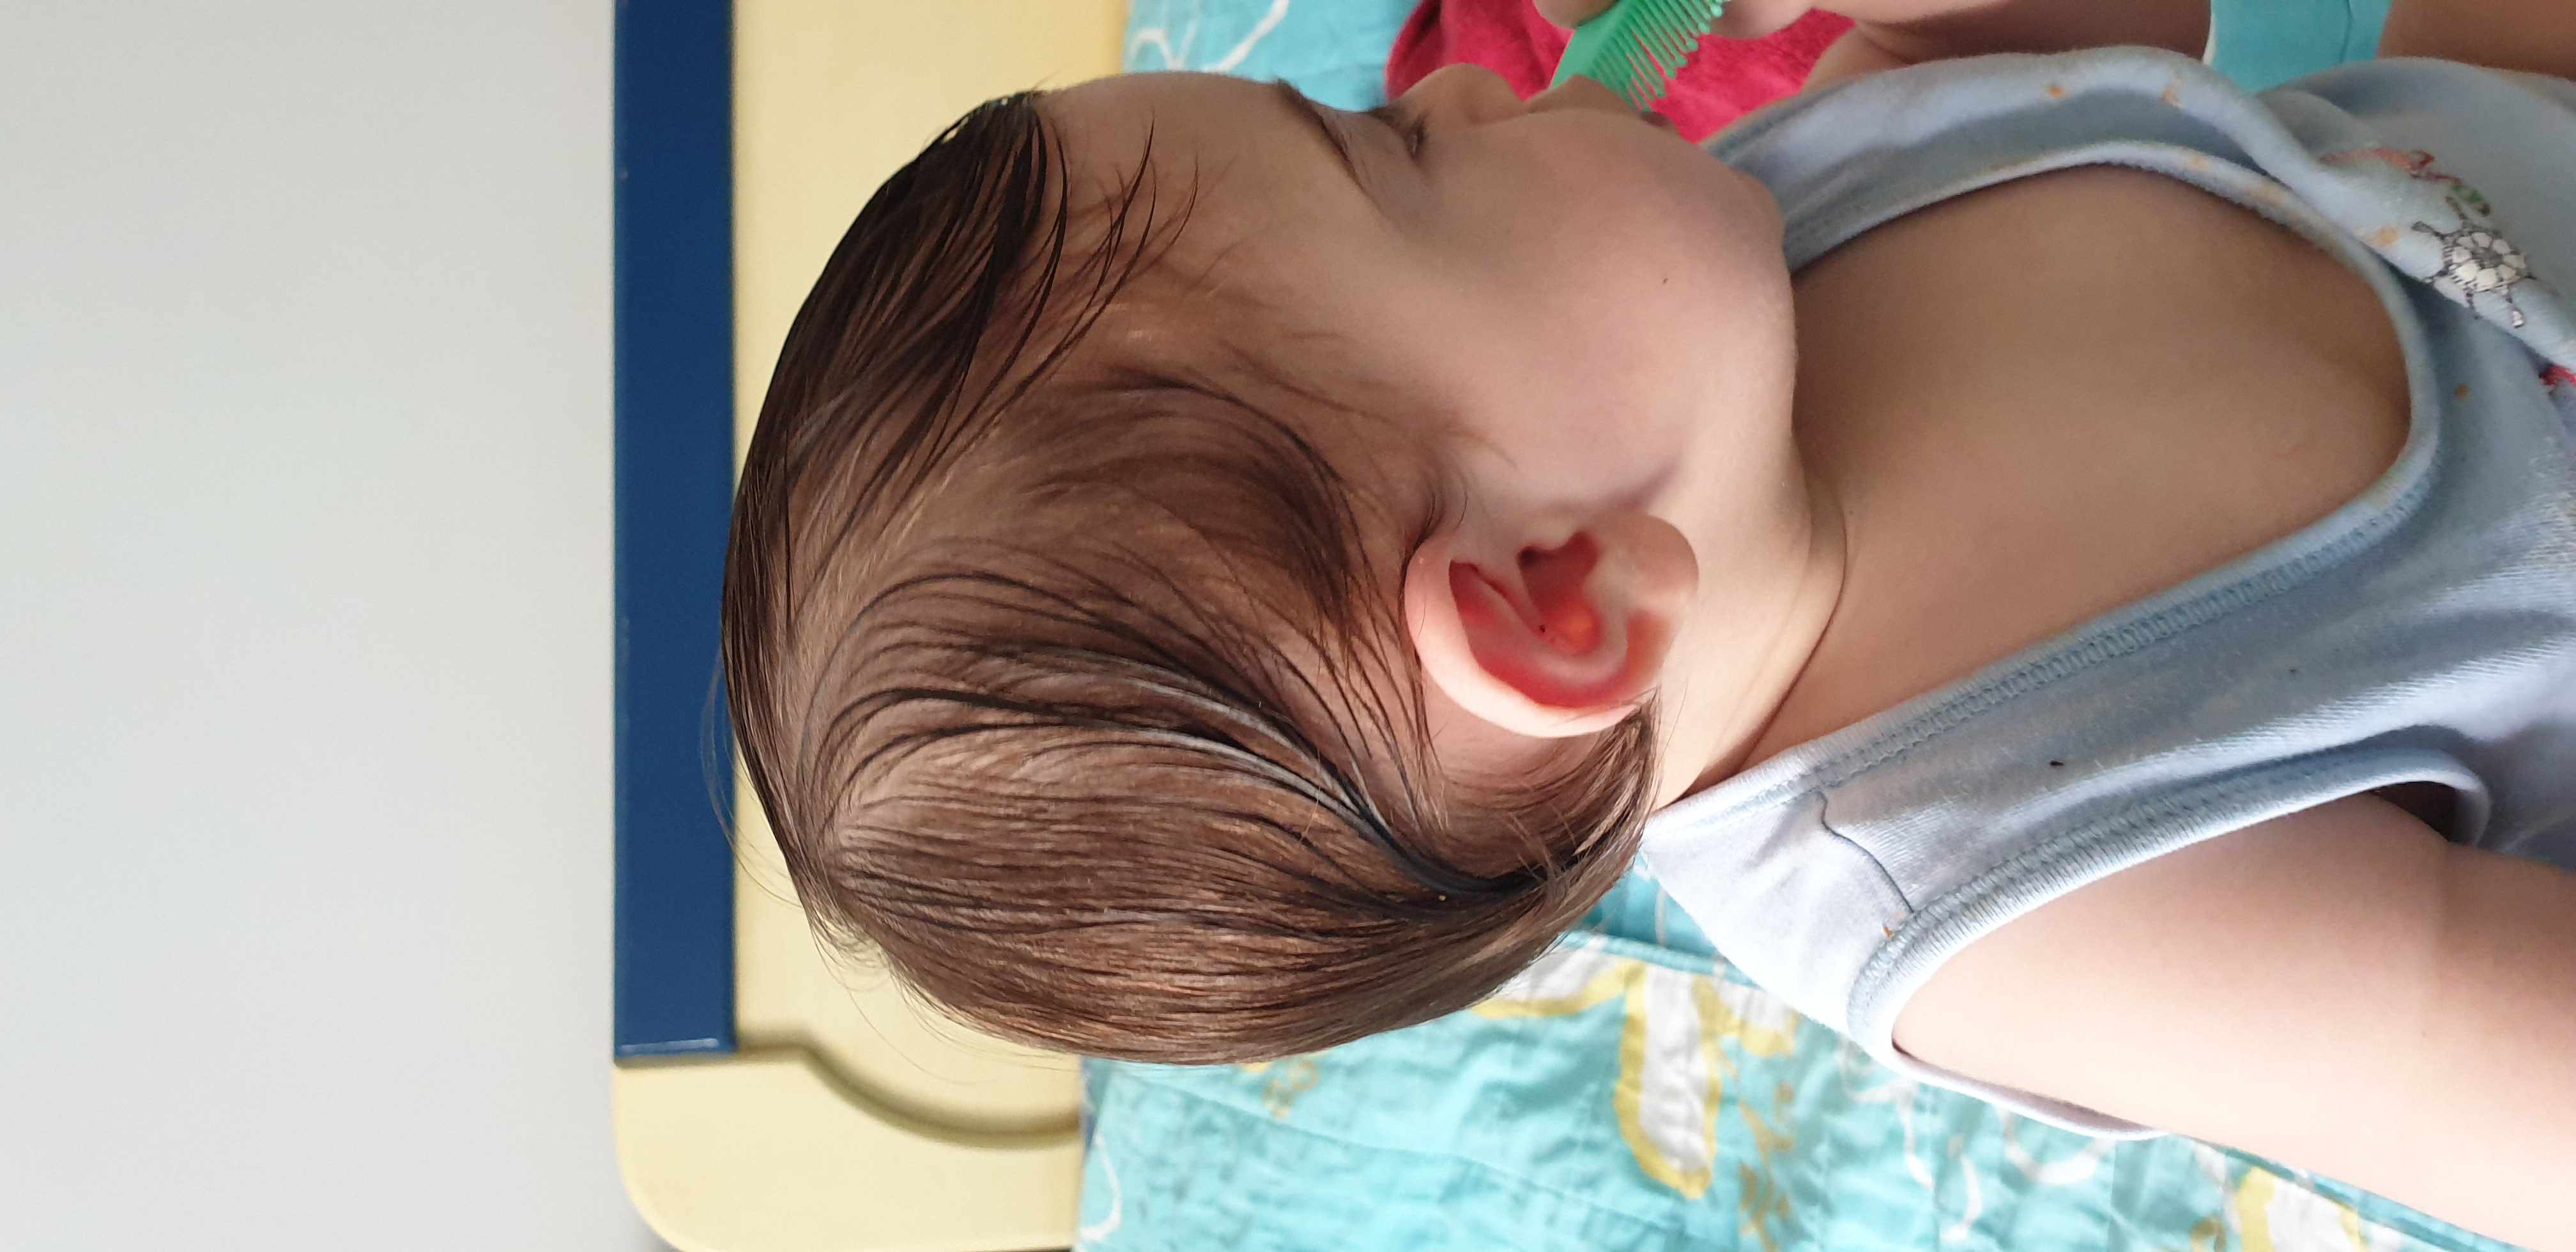 علاج و تعديل تسطح رأس الطفل بالخوذة